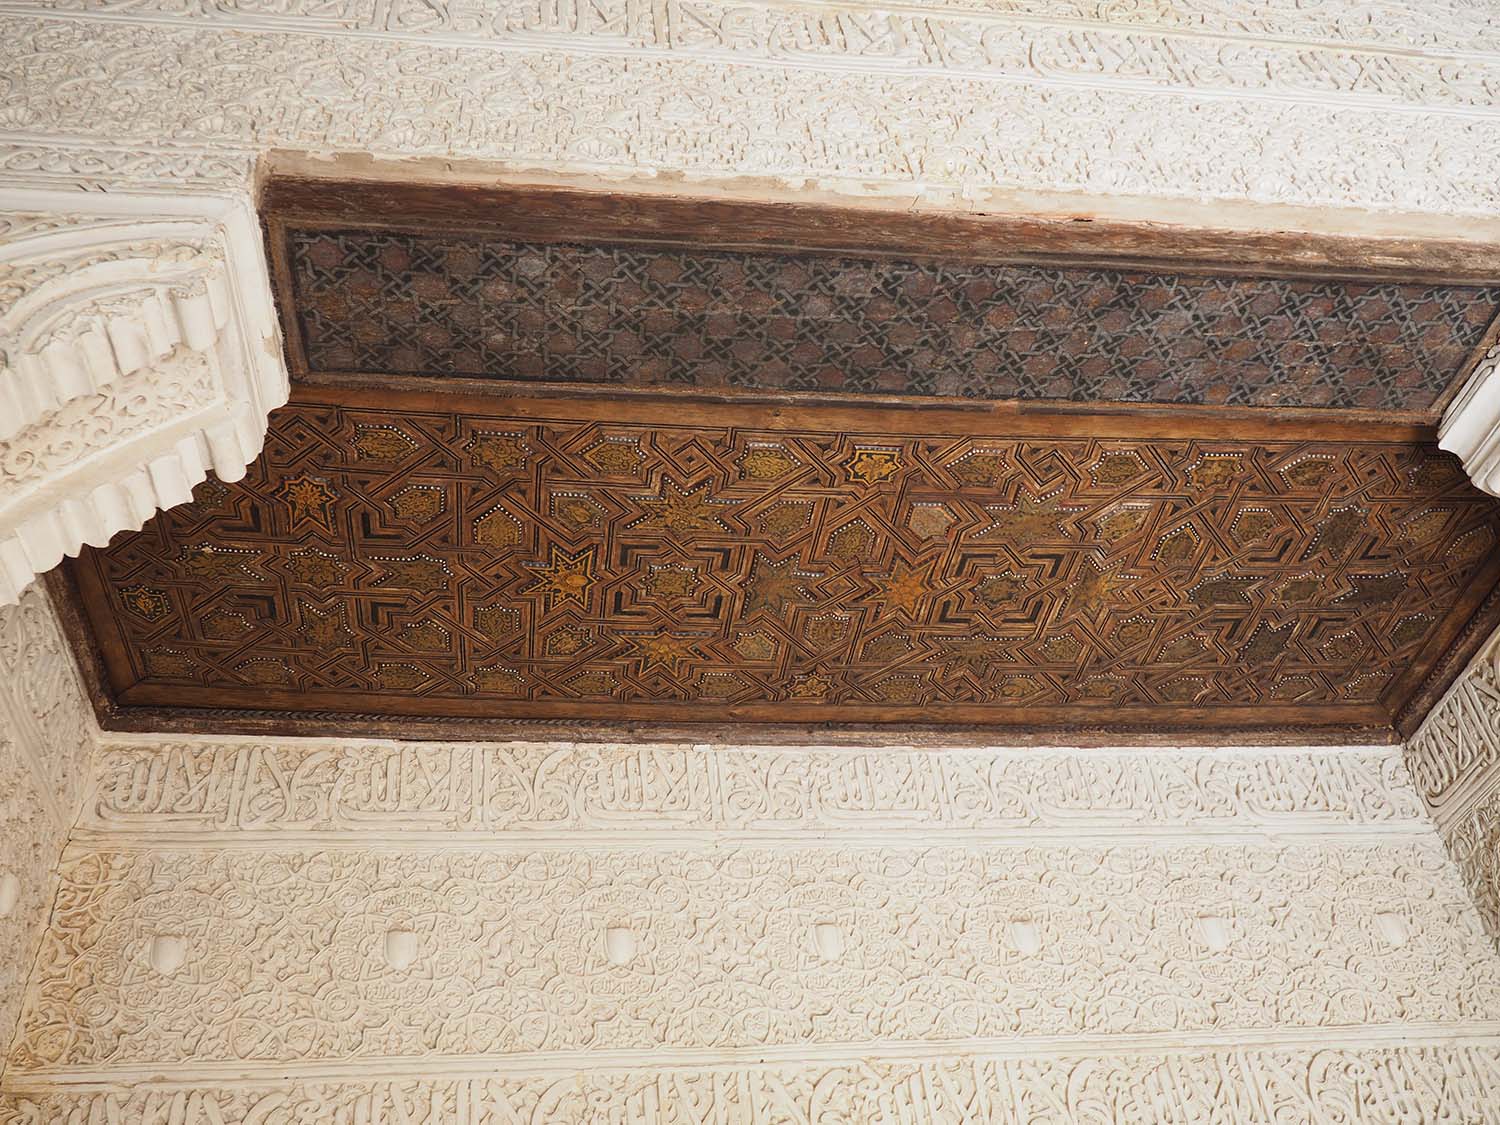 Plasterwork wall and wooden ceiling, hall off of the Patio de los Arrayanes, Palacio de Comares